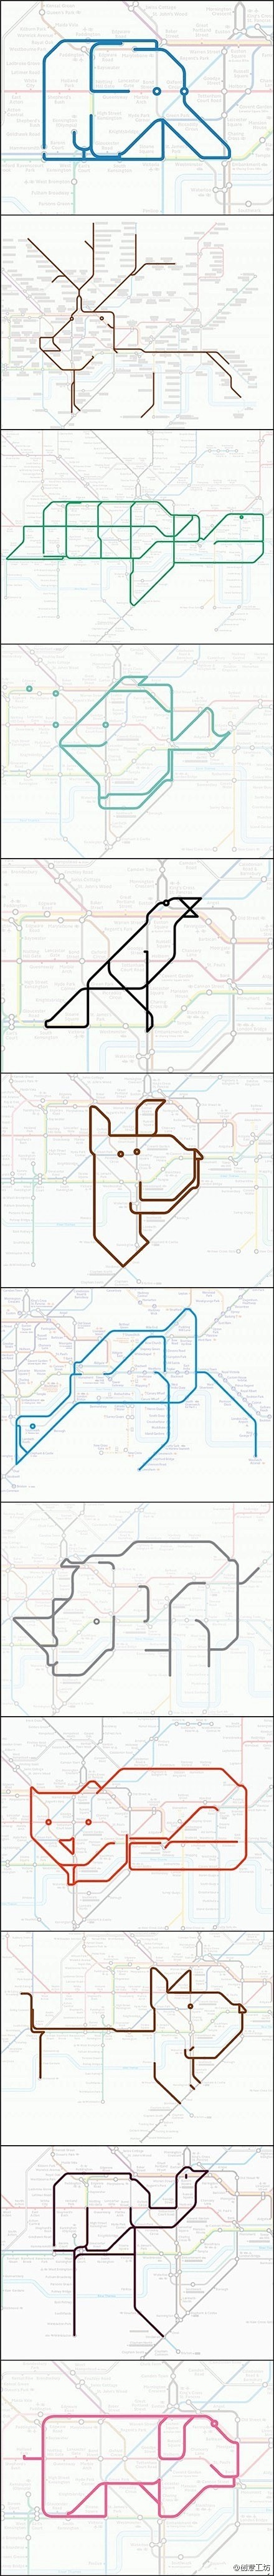 伦敦地铁地图创意